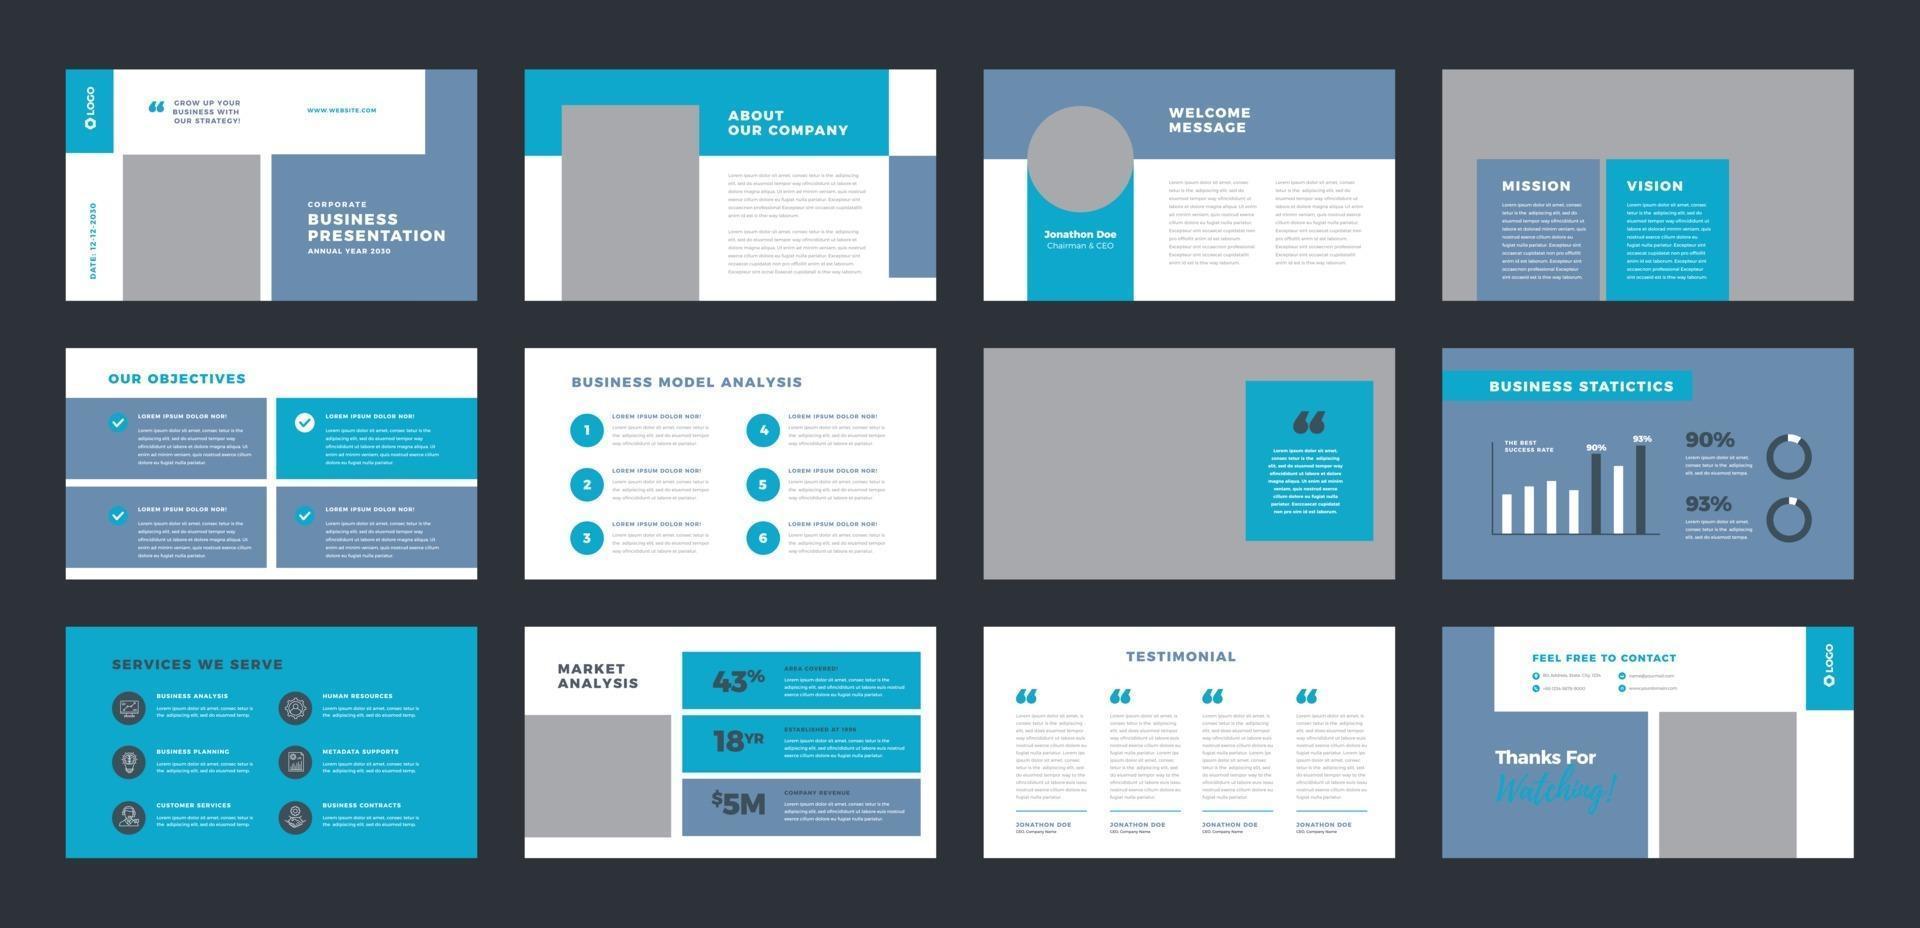 Business Presentation Brochure Guide Design or Pitch Deck sales slider vector